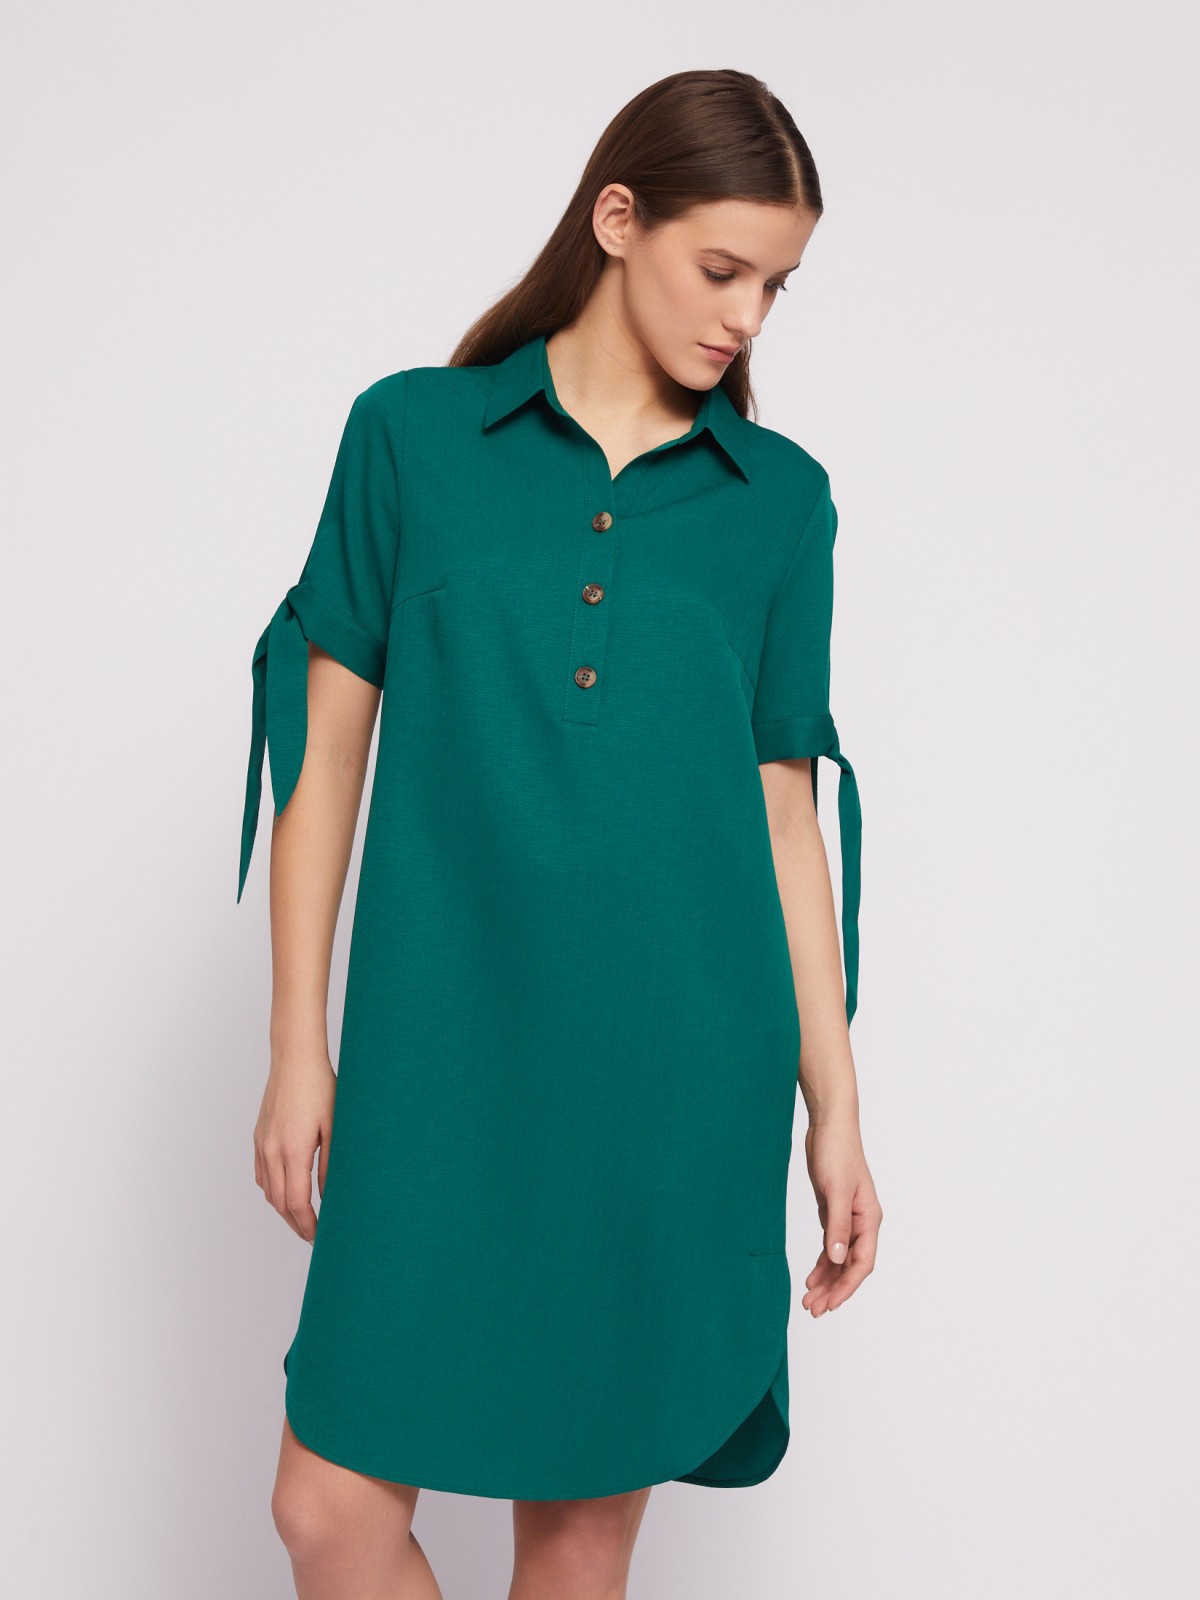 Платье-рубашка мини с акцентом на рукавах zolla 024218239333, цвет темно-зеленый, размер XXXL - фото 3